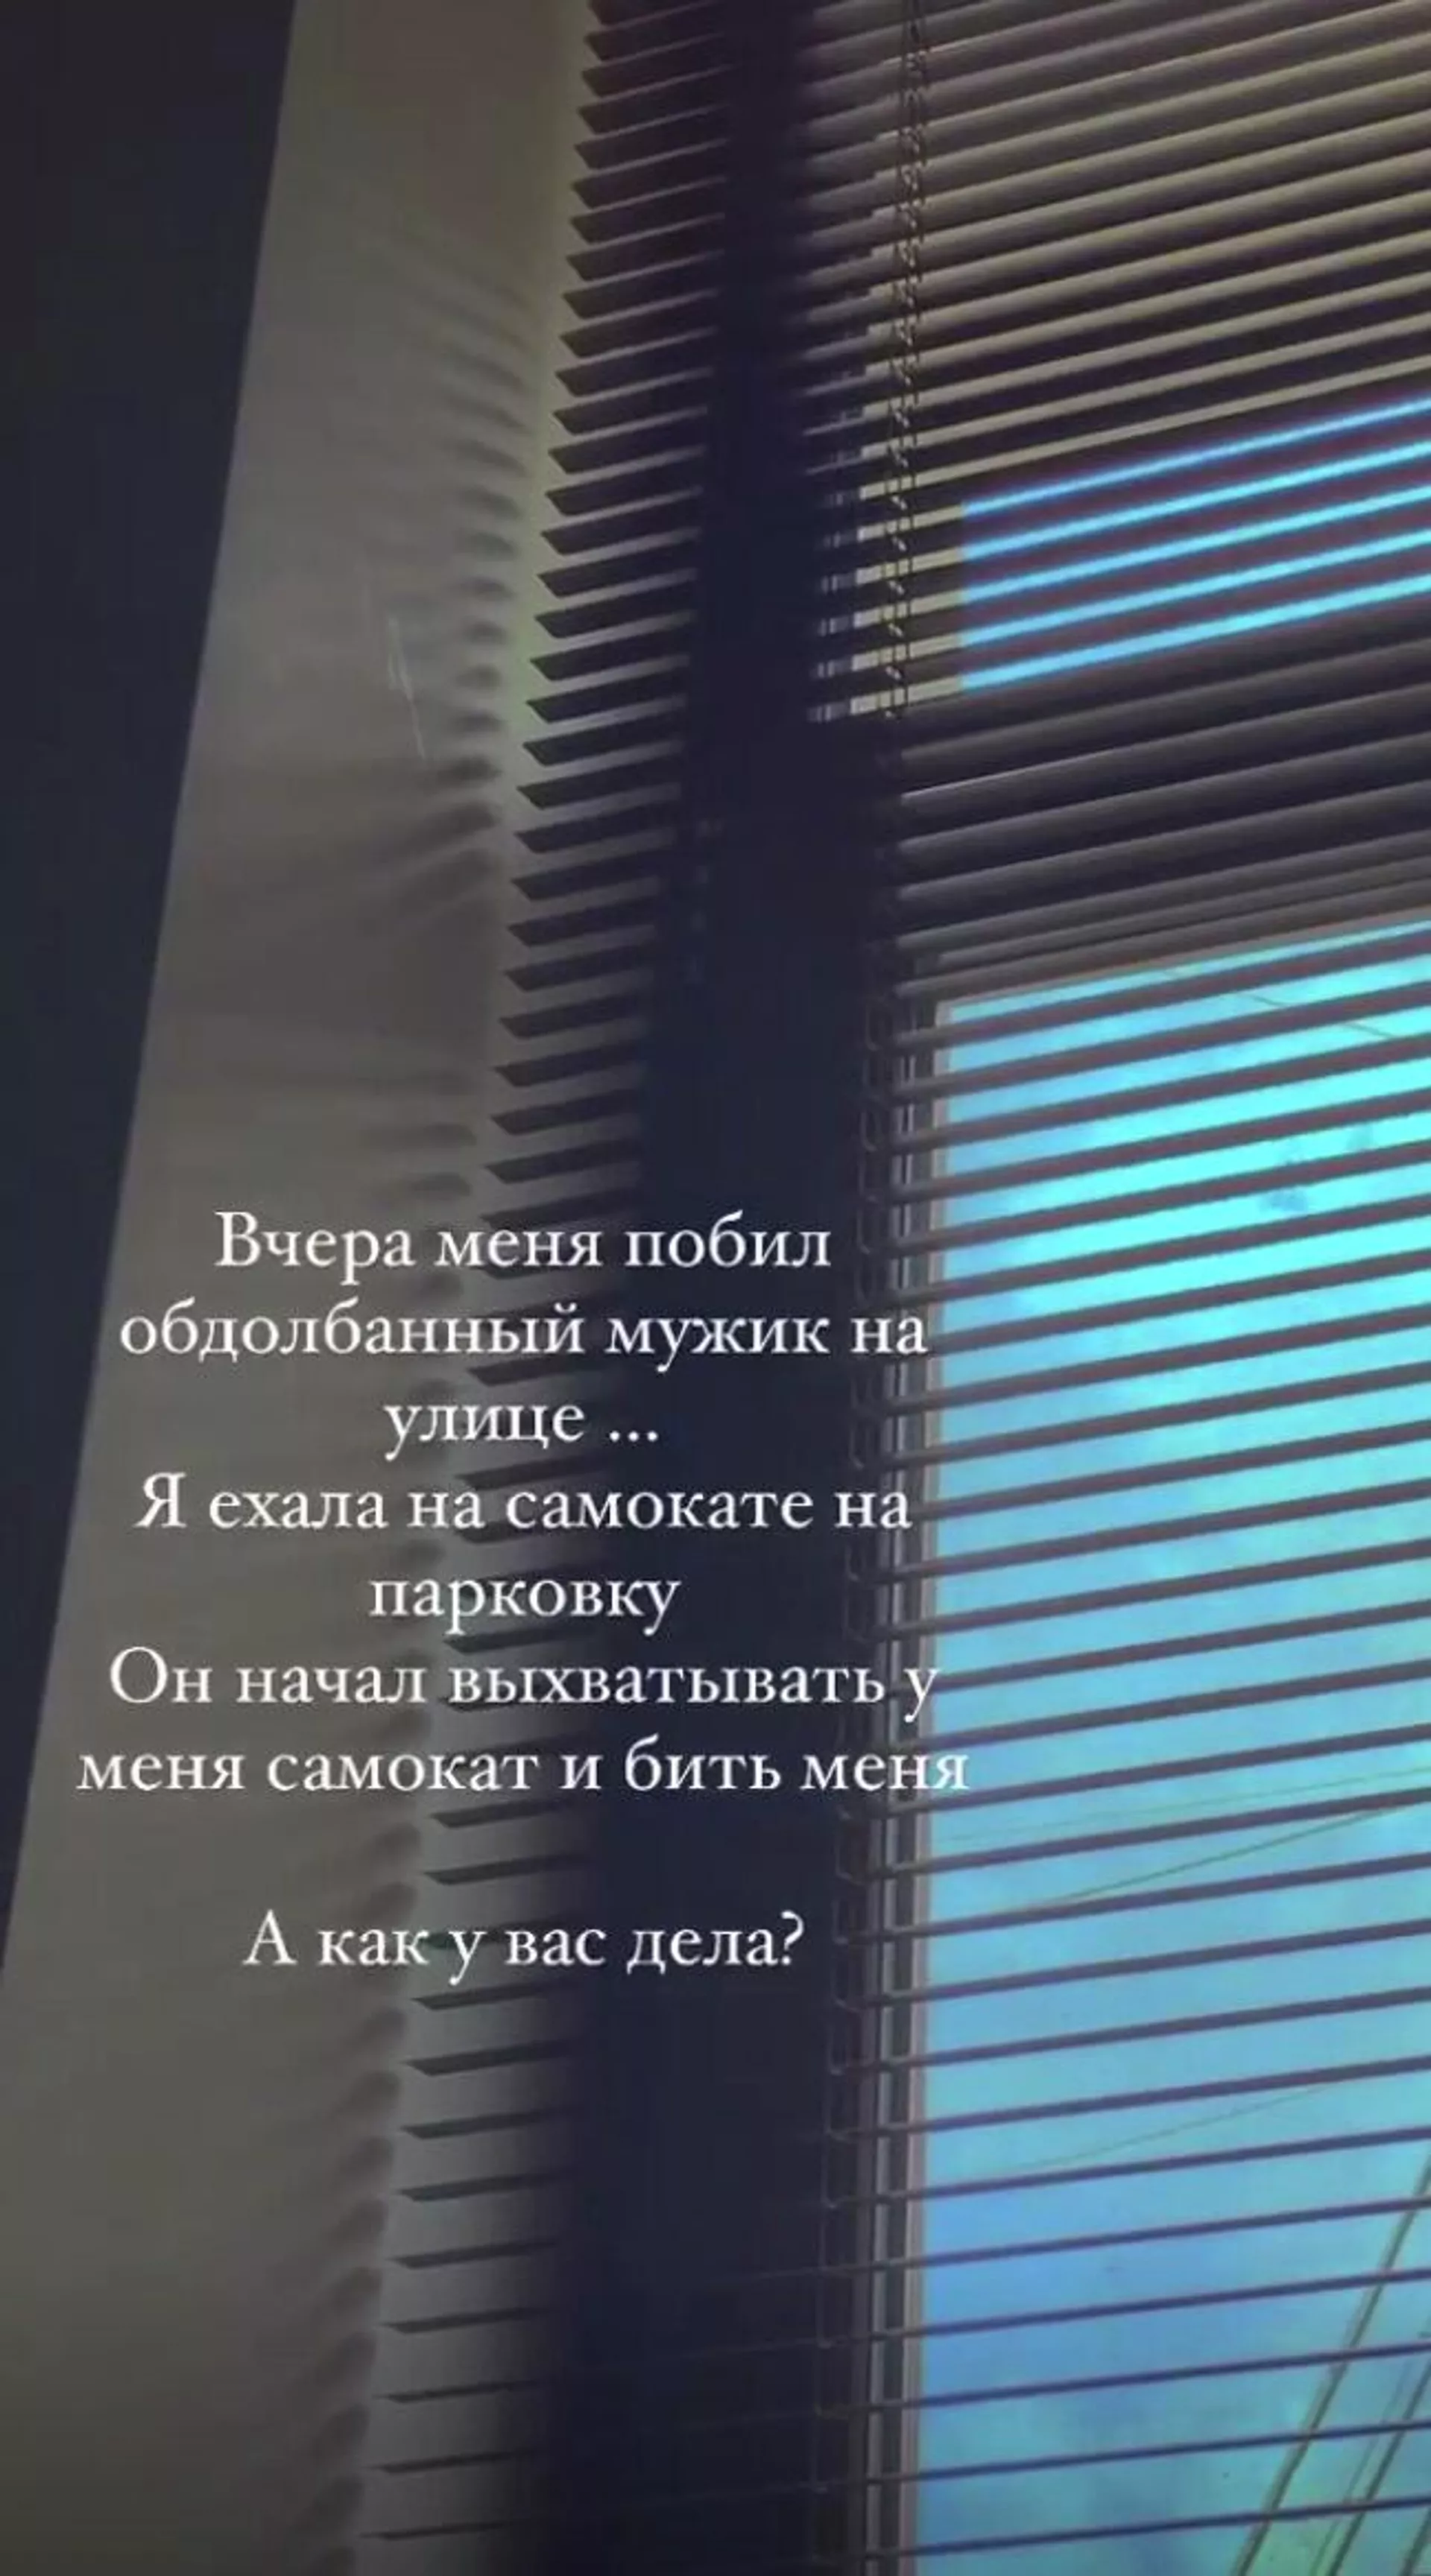 Скриншот из инстаграм-сториз Марьяны Ро за 5 сентября 2020 - РИА Новости, 1920, 05.09.2020